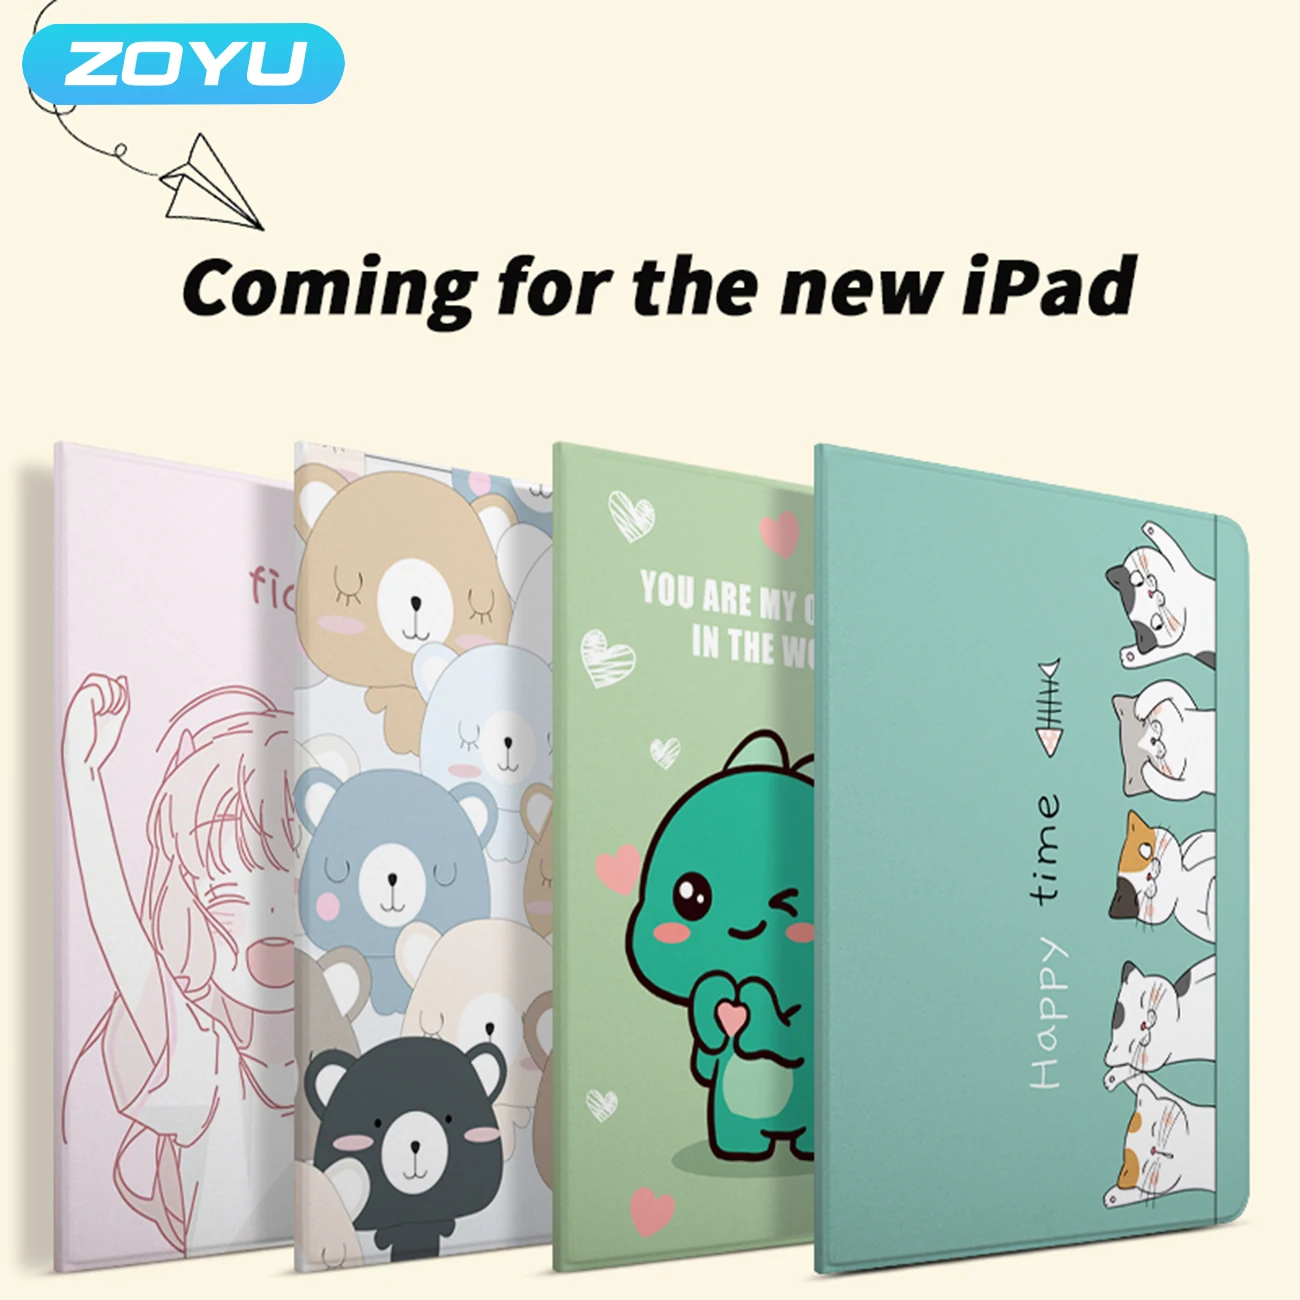 

Чехол ZOYU для iPad 2, 3, 4, силиконовый мягкий чехол-книжка с подставкой с автоматическим спящим режимом/пробуждением, умный чехол из искусственн...